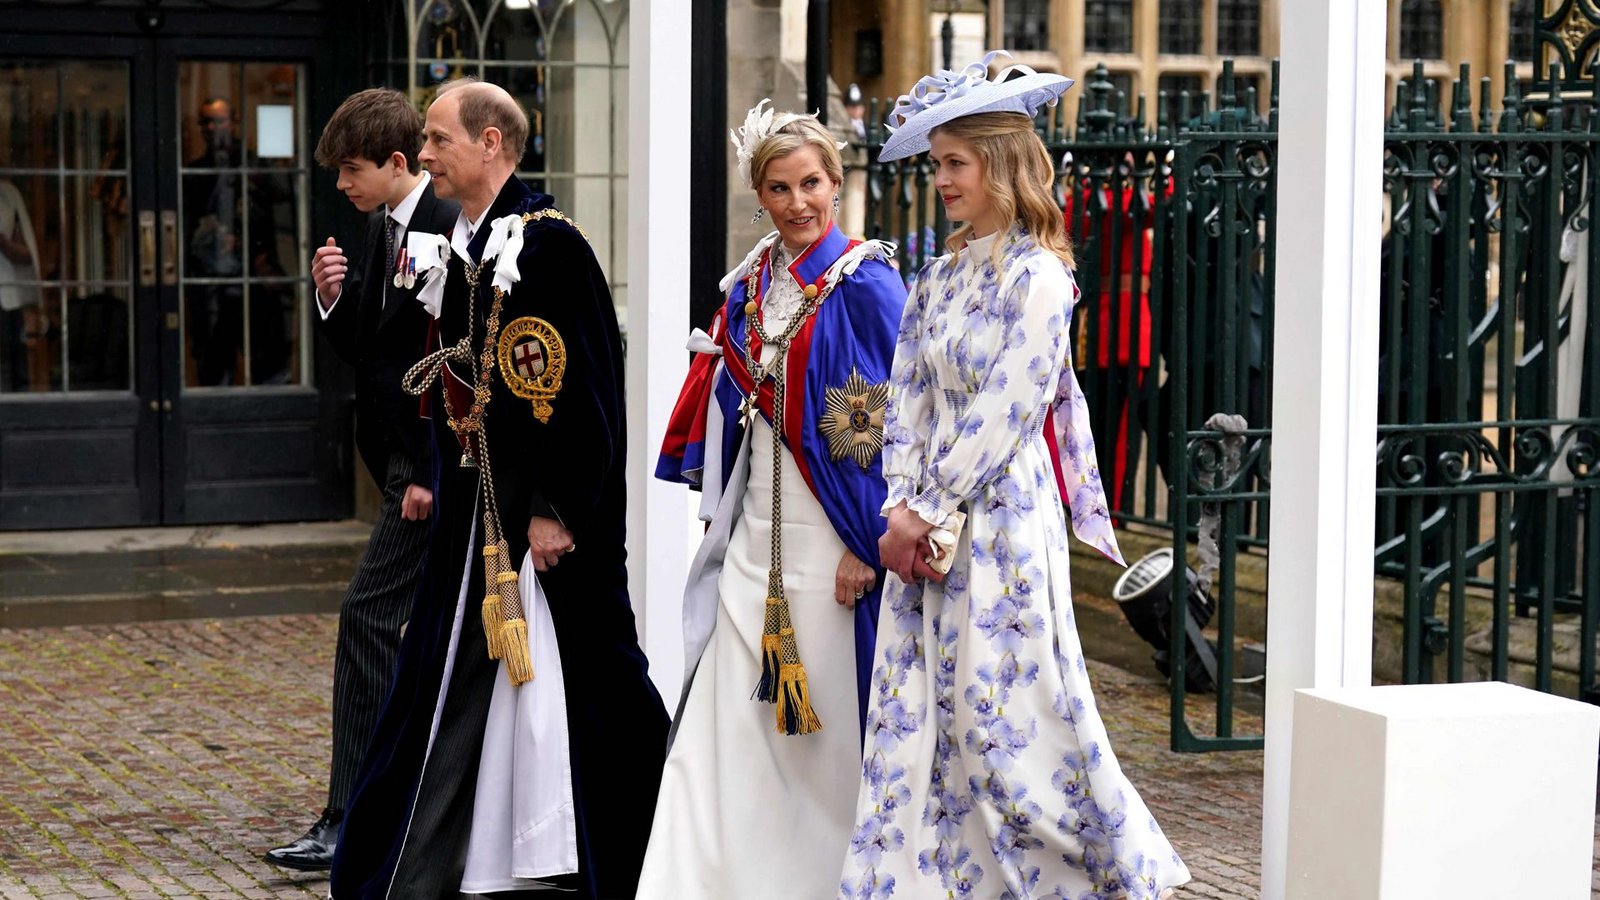 Der jüngste Bruder des Königs: Prinz Edward, Herzogin Sophie und ihre Kinder Louise und JamesFoto: AFP/ANDREW MILLIGAN